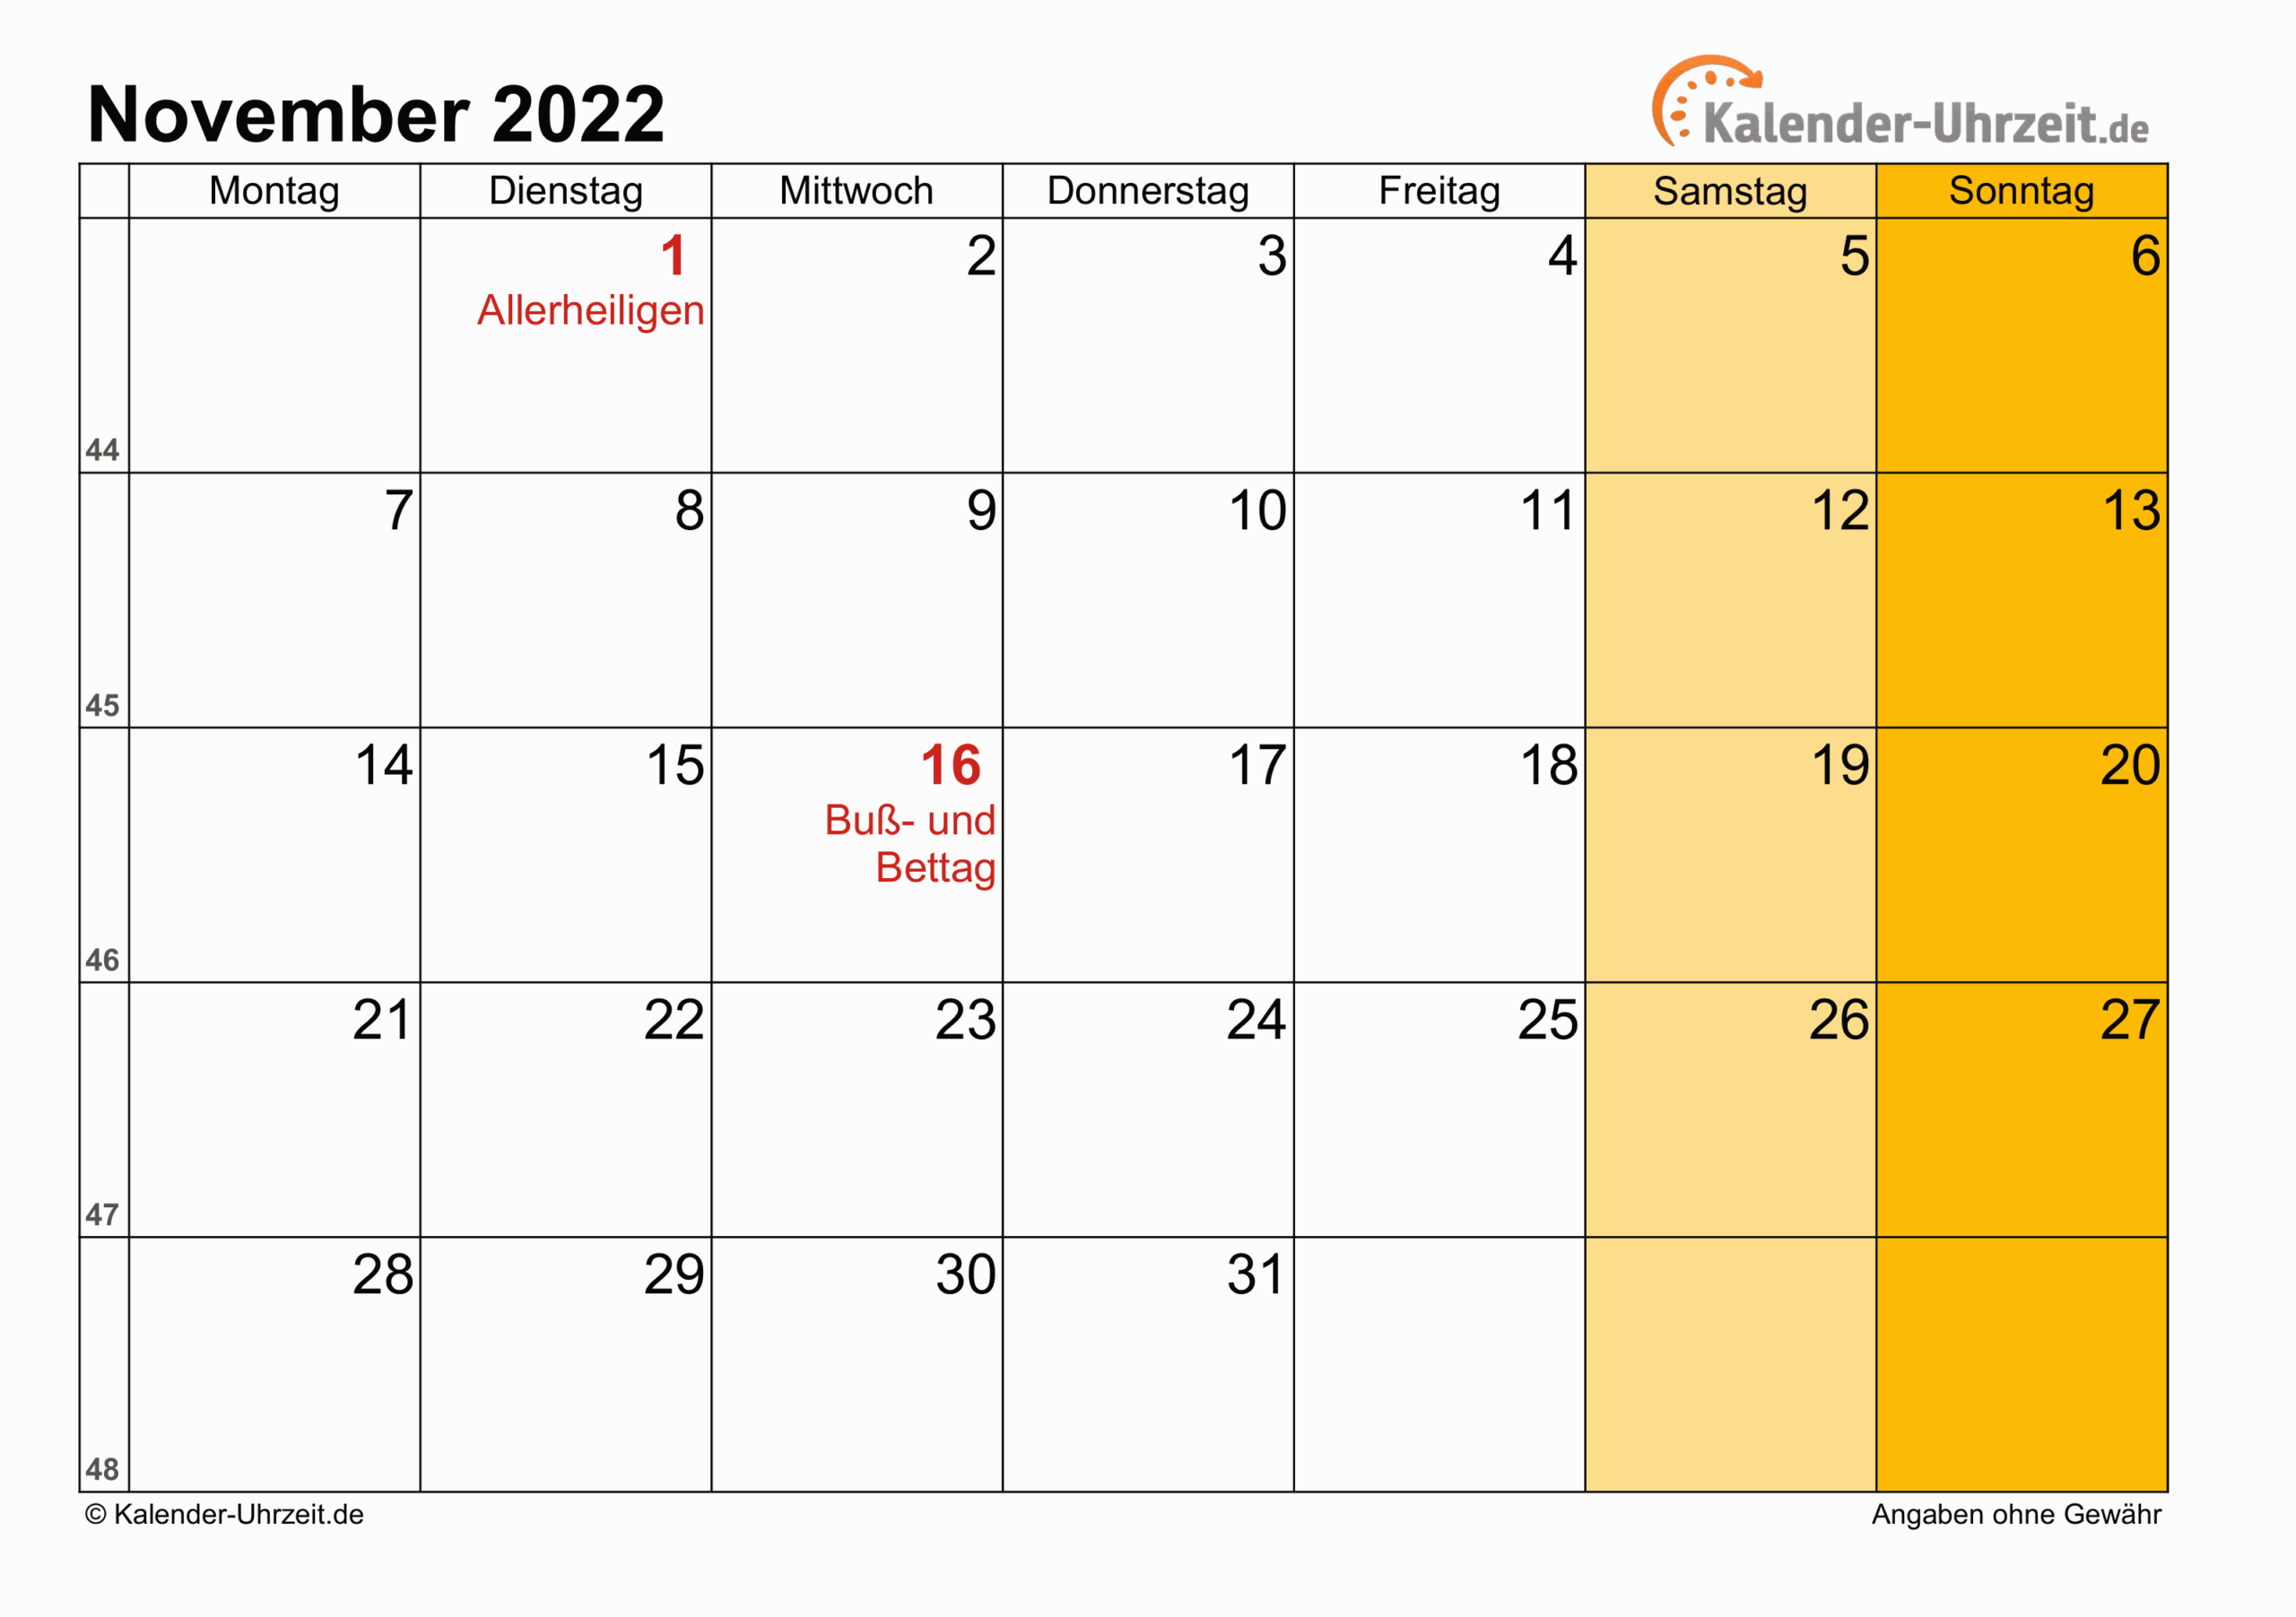 Collect 2022 Calendar For November